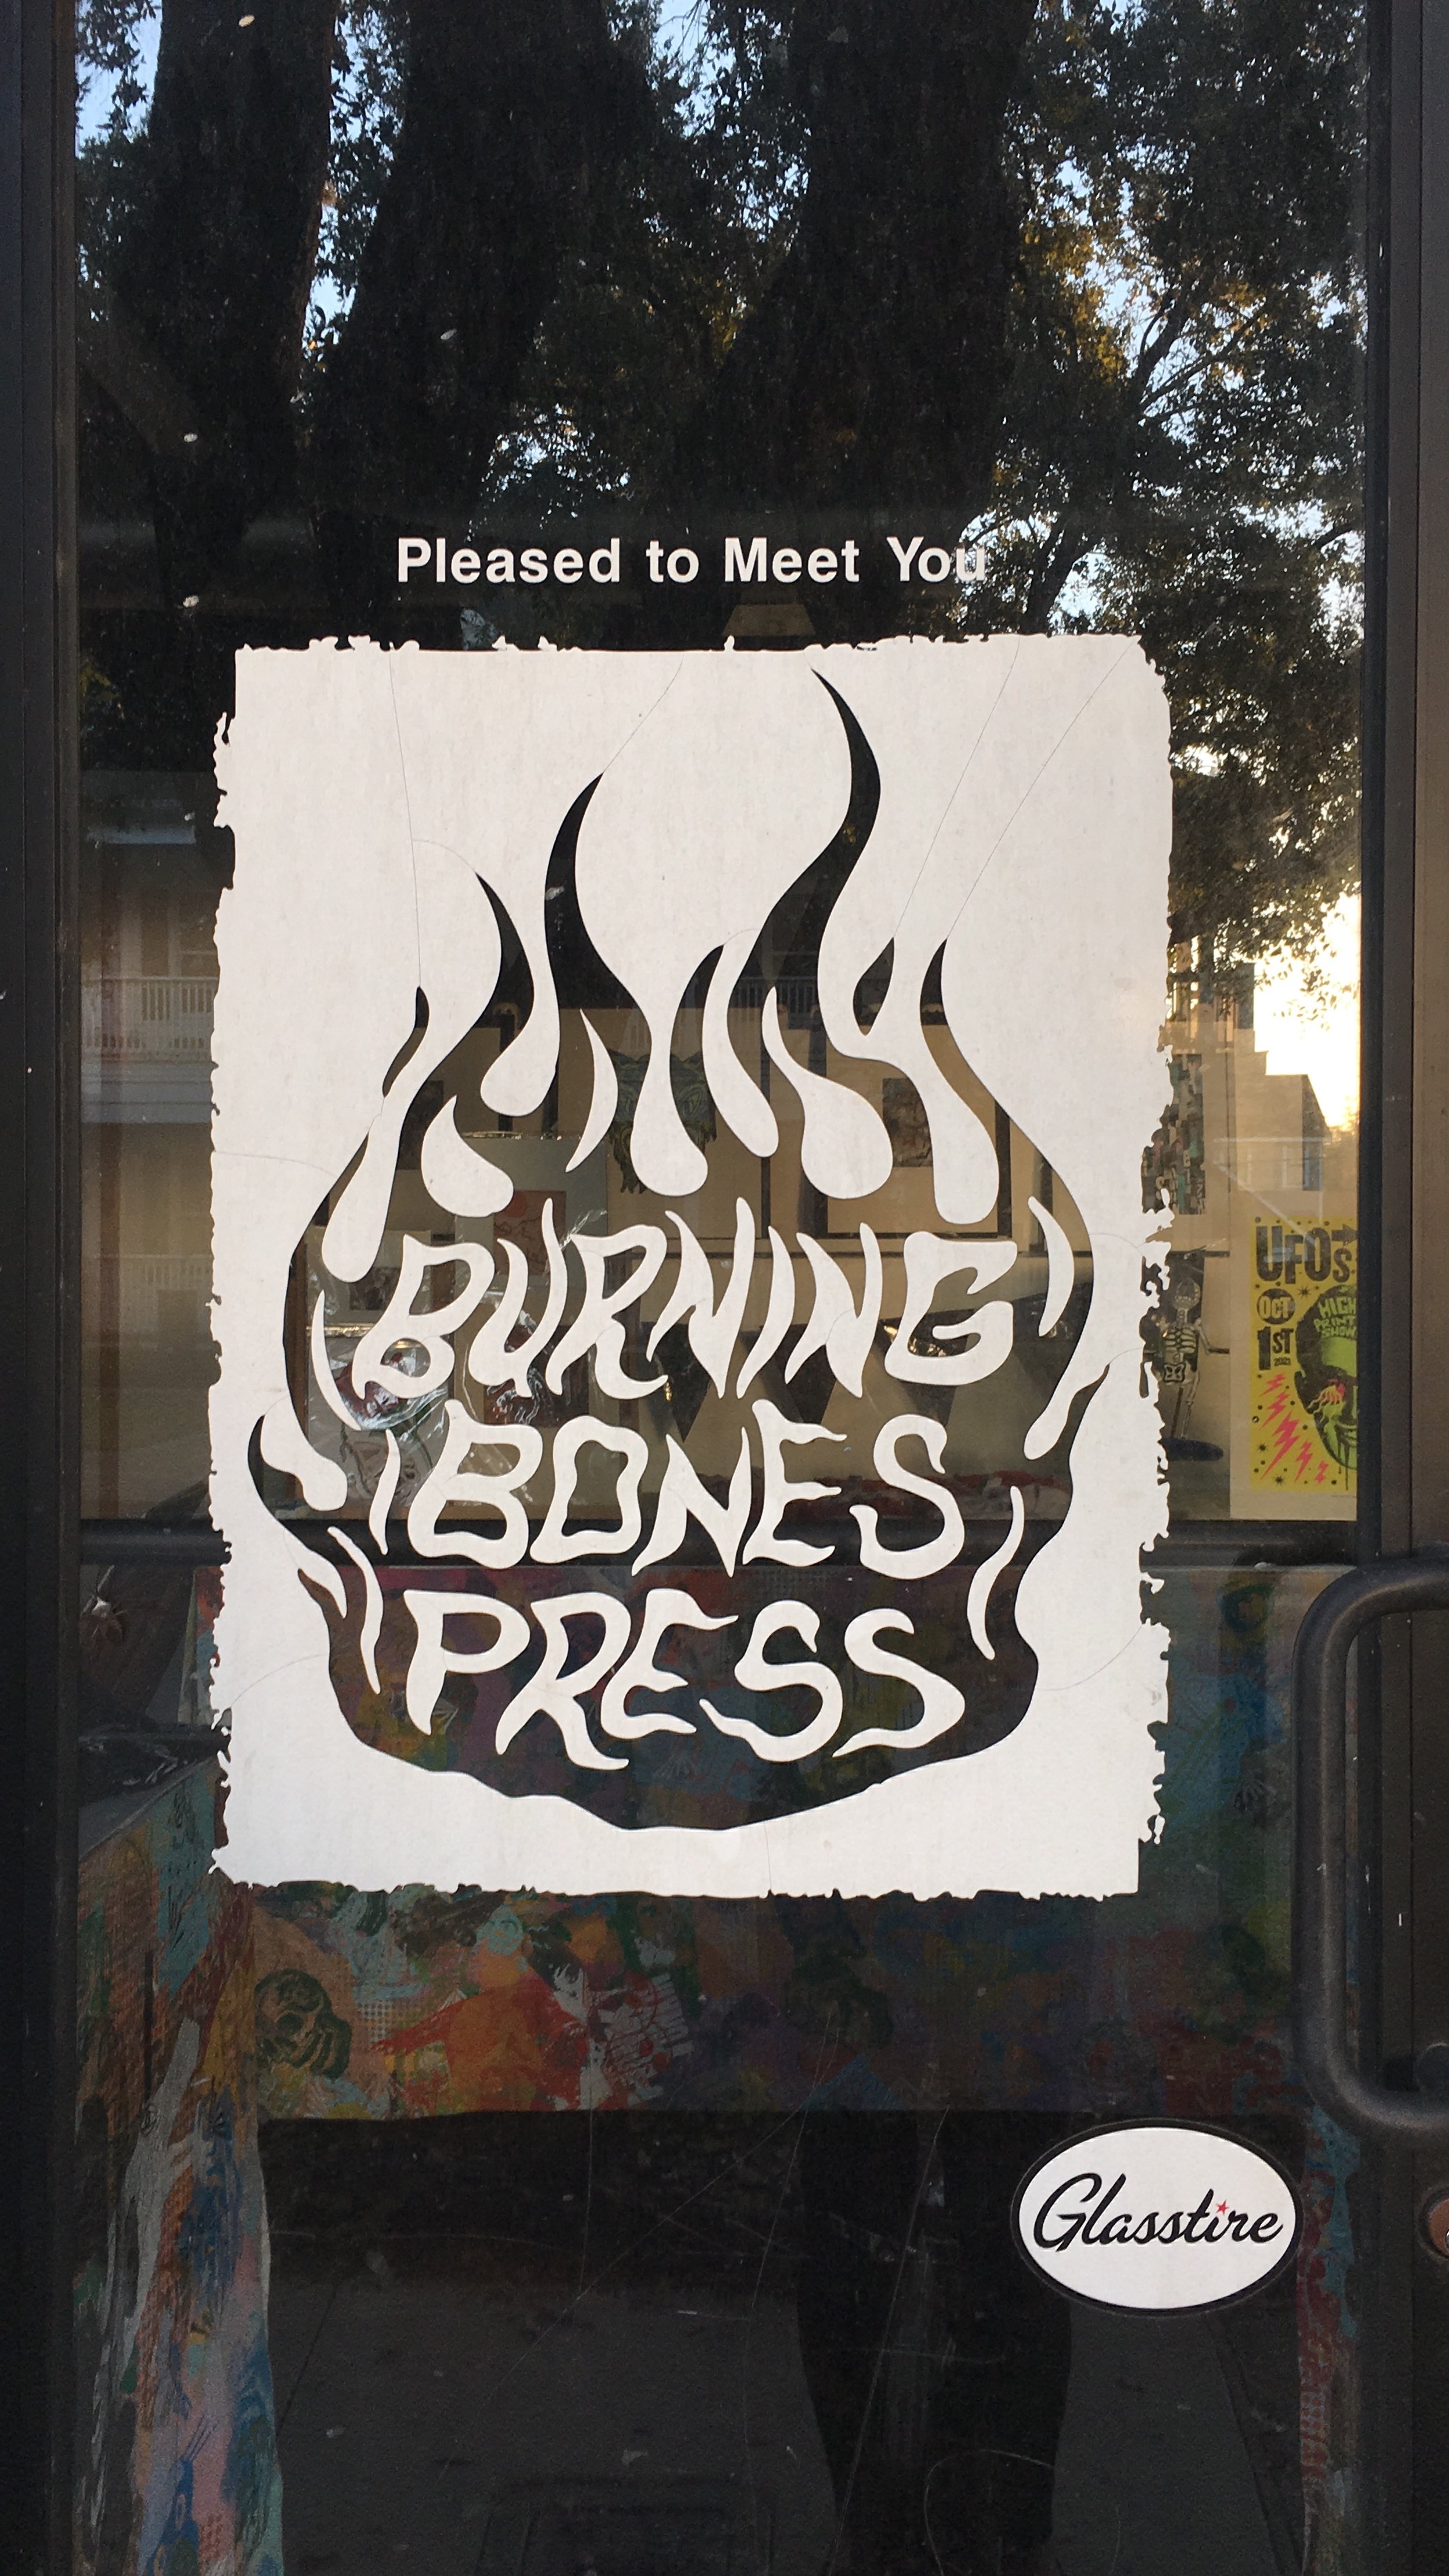 Burning Bones Press...Member🔥💀